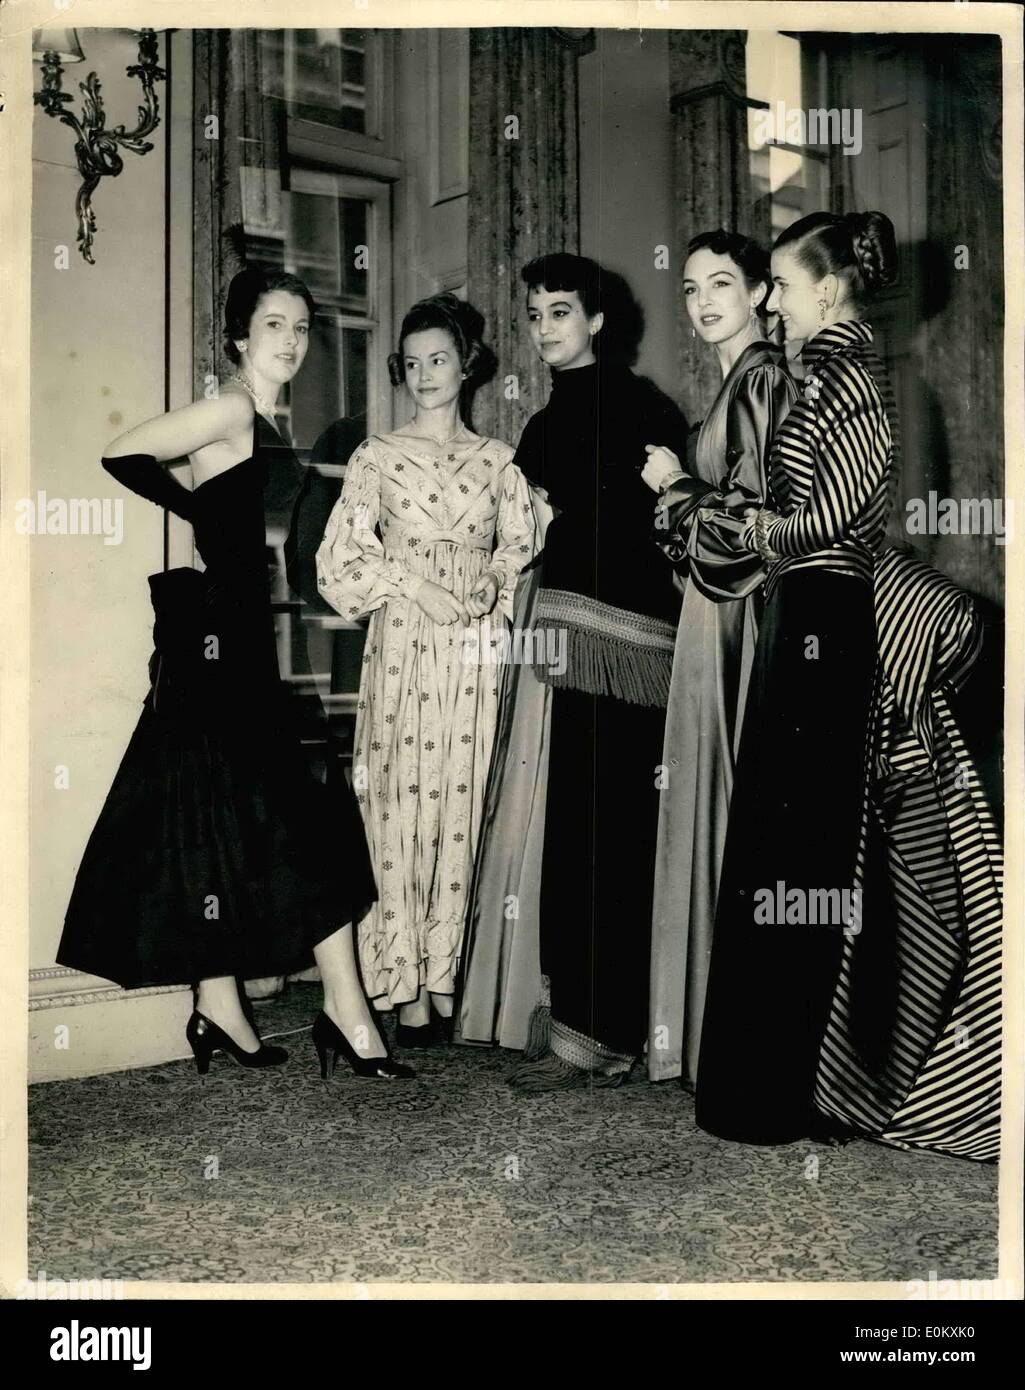 Octubre 10, 1952 - Nelson en Trafalgar muestran en vestidos antiguos y modernos en la pantalla: la Princesa Marie Louise esta abrió el Trafalgar en el 6. Stanhope